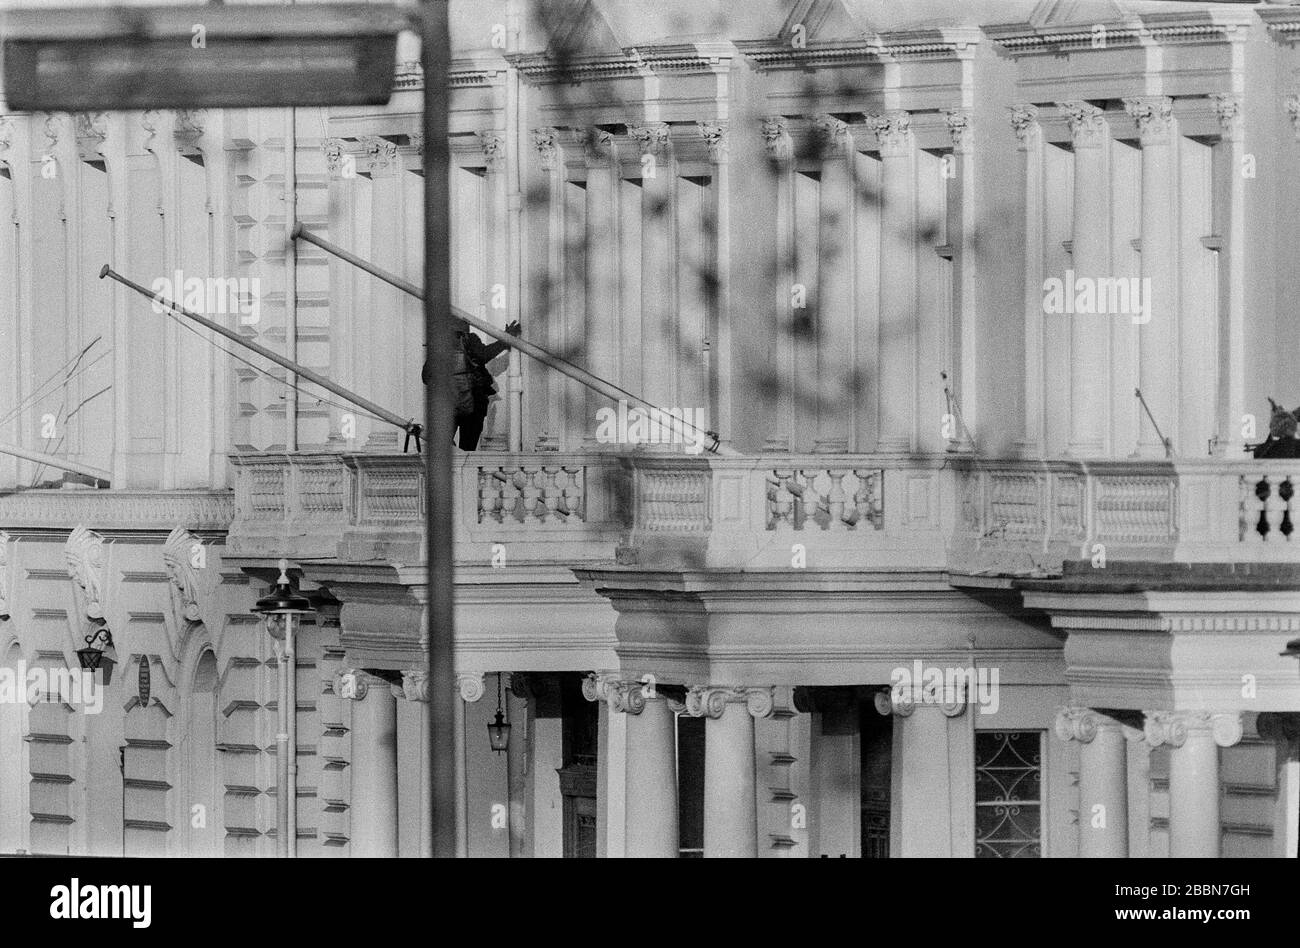 Am 5. Mai 1980 stürmte das Spezialeinsatzteam der SAS British Army die iranische Botschaft in London, um 26 Geiseln zu befreien, die von einer arabischen Terrororganisation namens KSA-Gruppe festgehalten wurden, die sich für die arabische nationale Souveränität einsetzt. Unter den Geiseln befand sich auch der BBC-Tonrecordist SIM Harris, der aus einem Fenster flüchtete und über einen Balkon sprang. Stockfoto